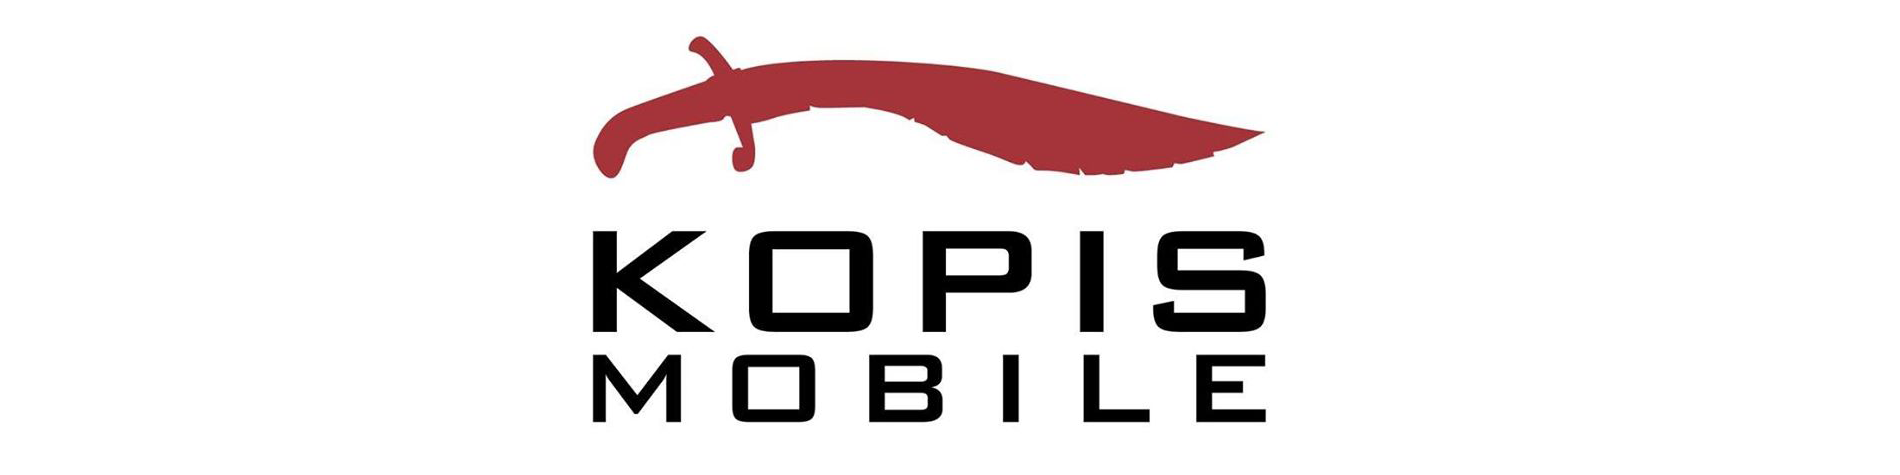 Kopis Mobile logo